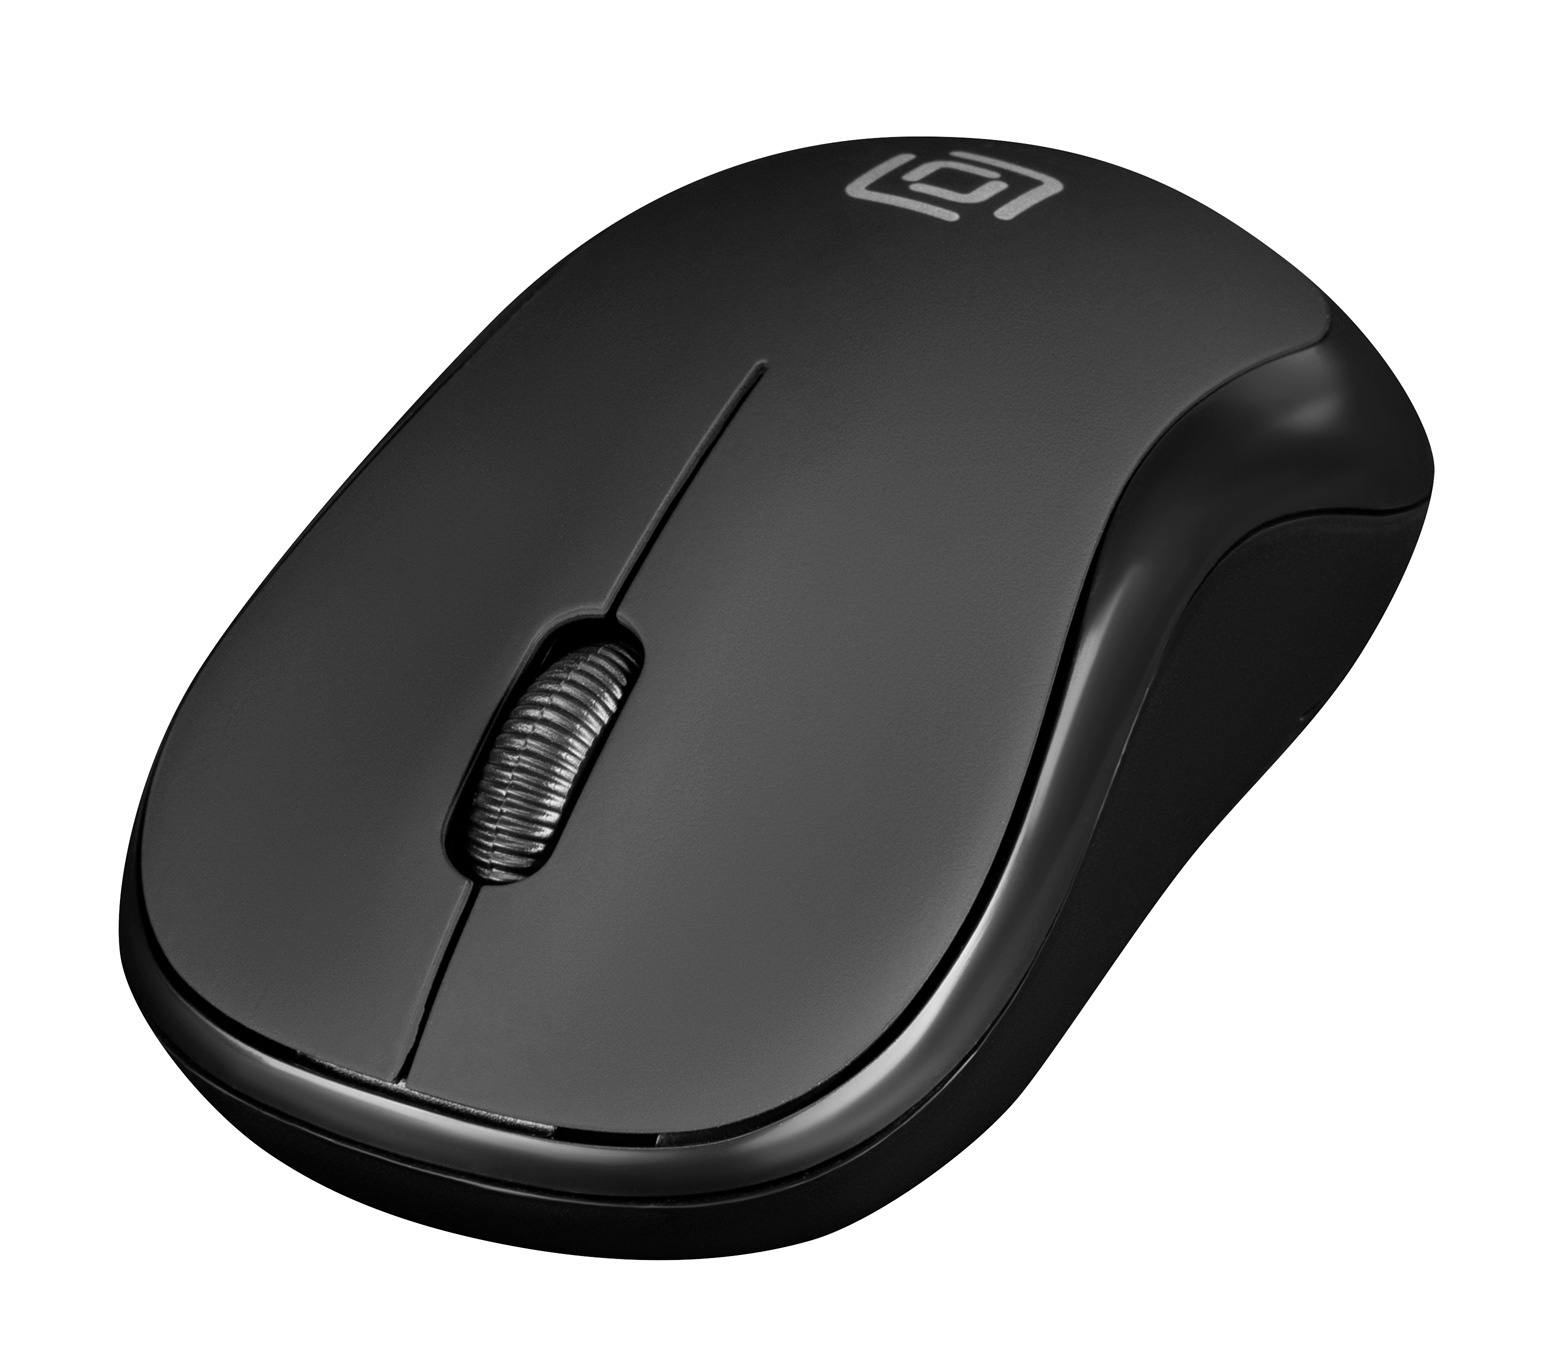 Клавиатура+мышь Oklick 225M клав:черный мышь:черный USB беспроводная